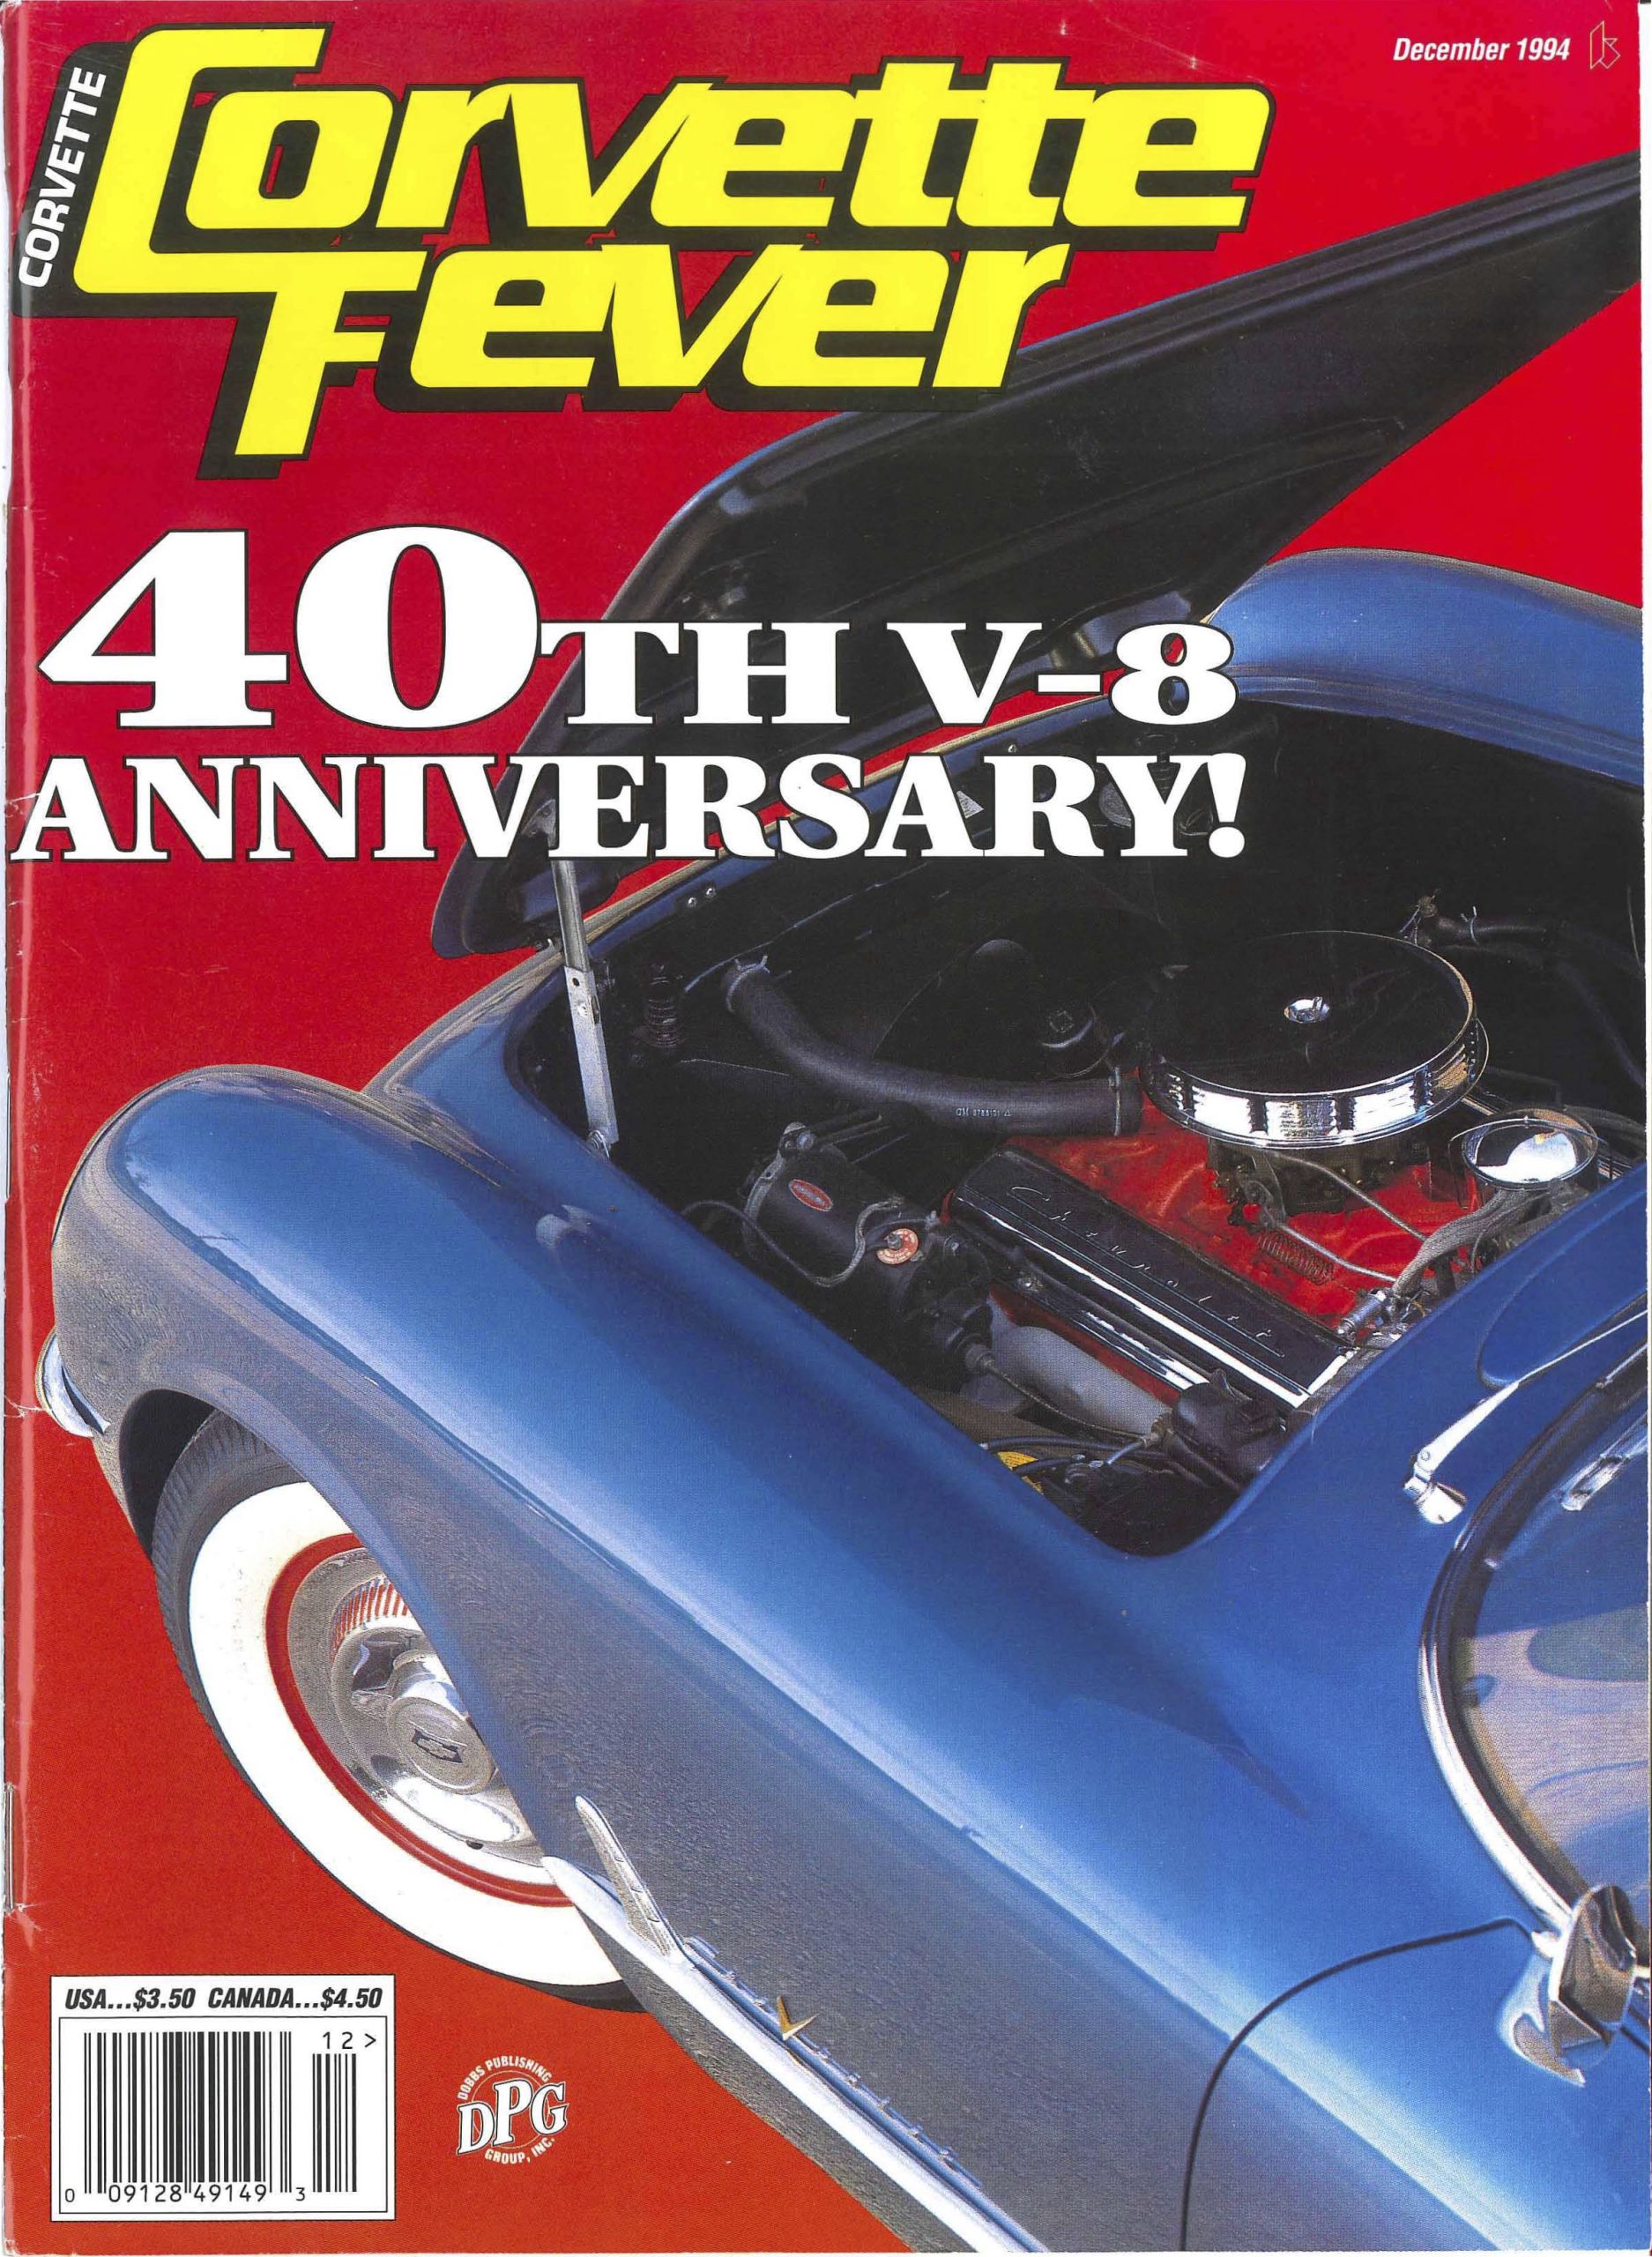 Corvette Fever December 1994